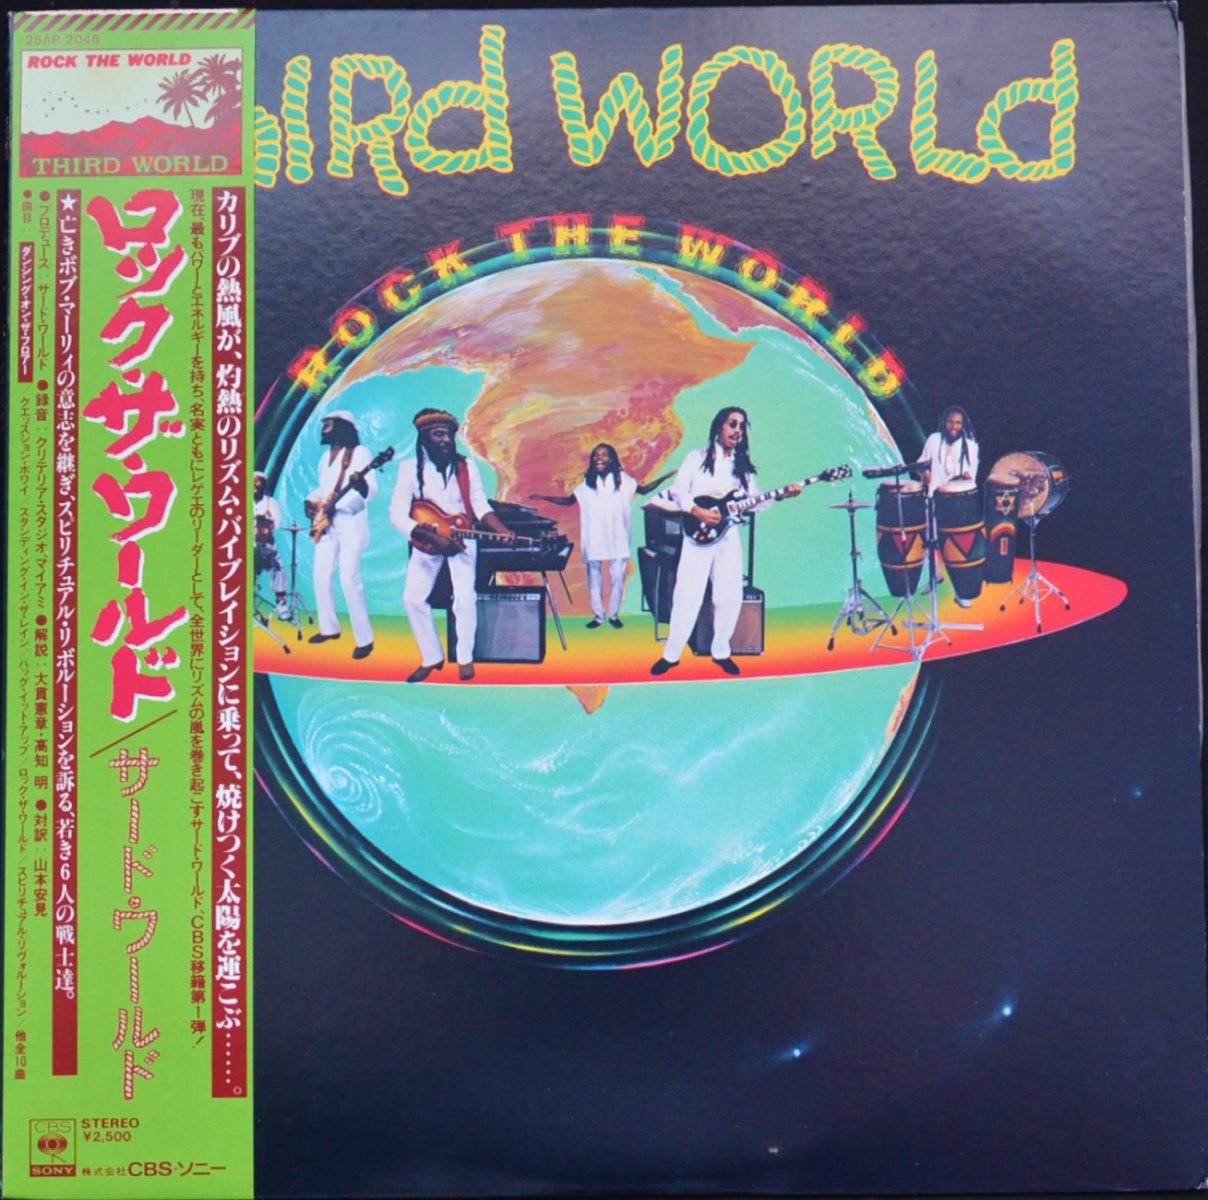 HIP　ROCK　(LP)　TANK　THE　サード・ワールド　RECORDS　ロック・ザ・ワールド　THIRD　WORLD　WORLD